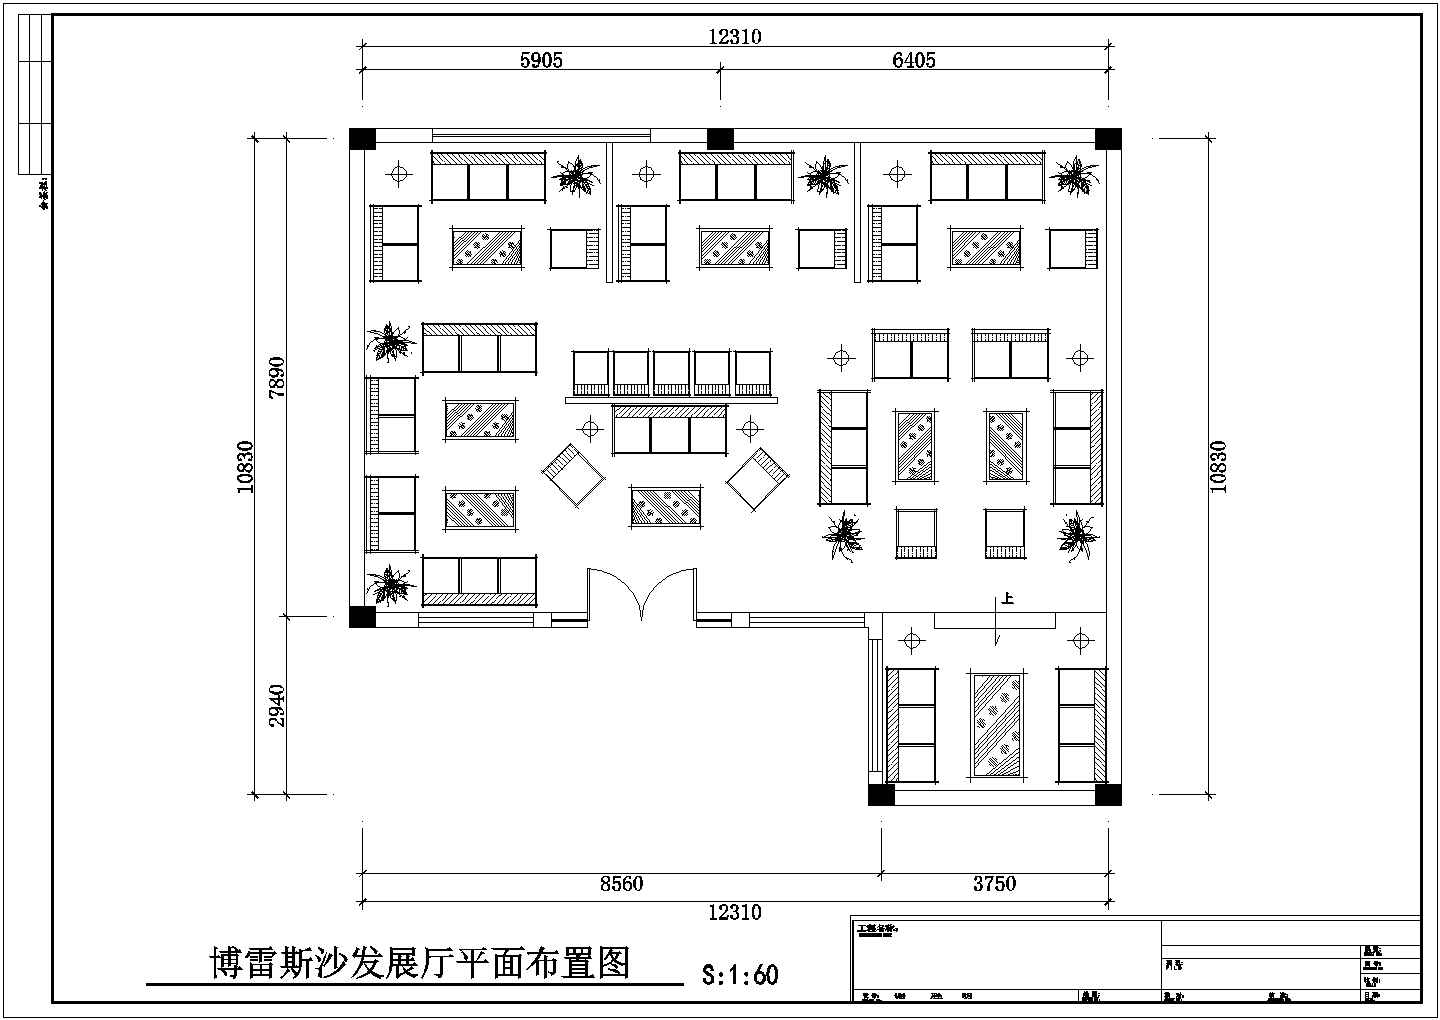 某长17.1米 宽16米 某沙发展厅CAD室内设计装修图【装修各平面布置图】